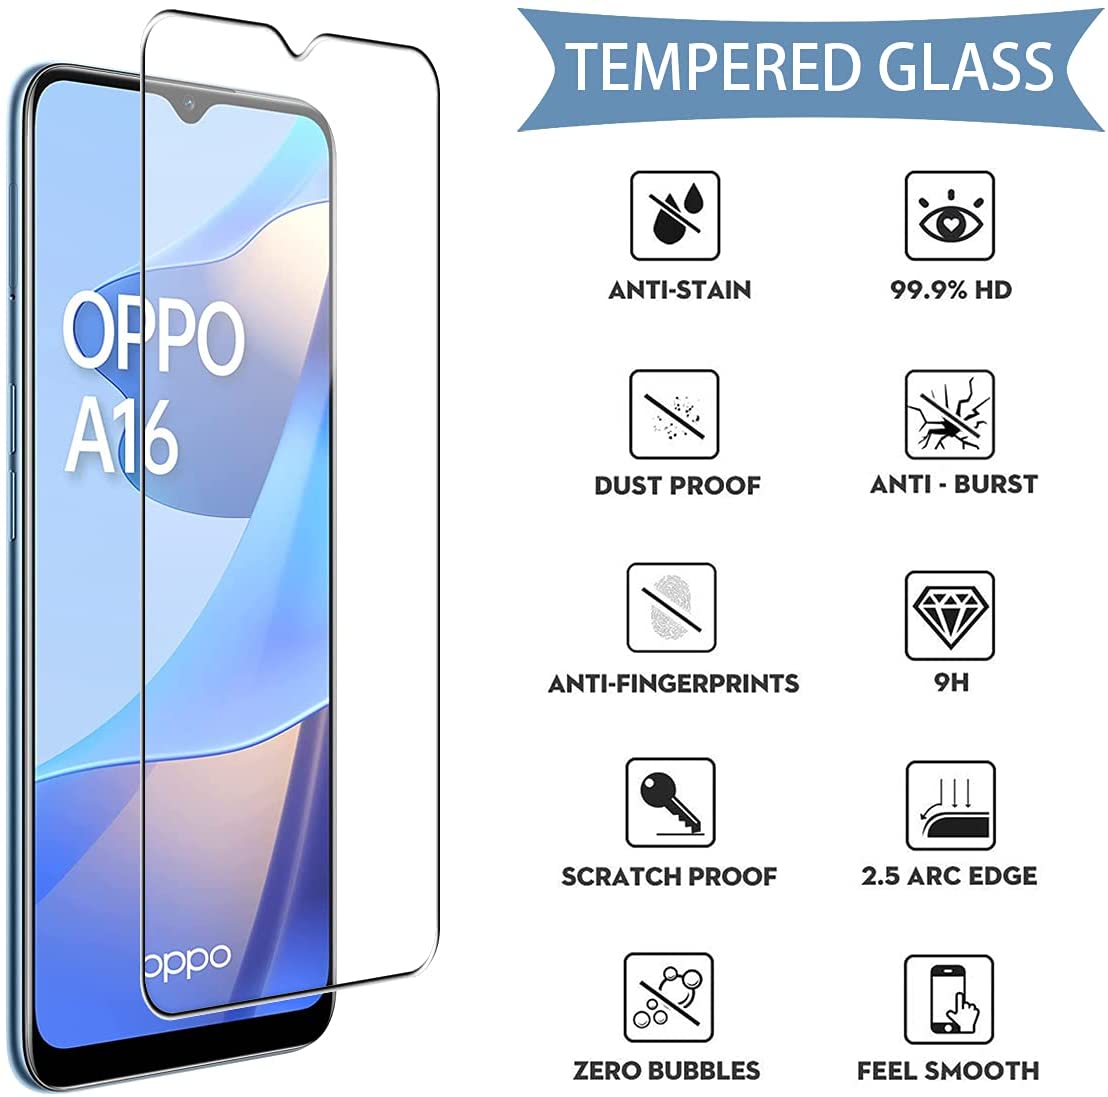 oppoa16-glass-cover